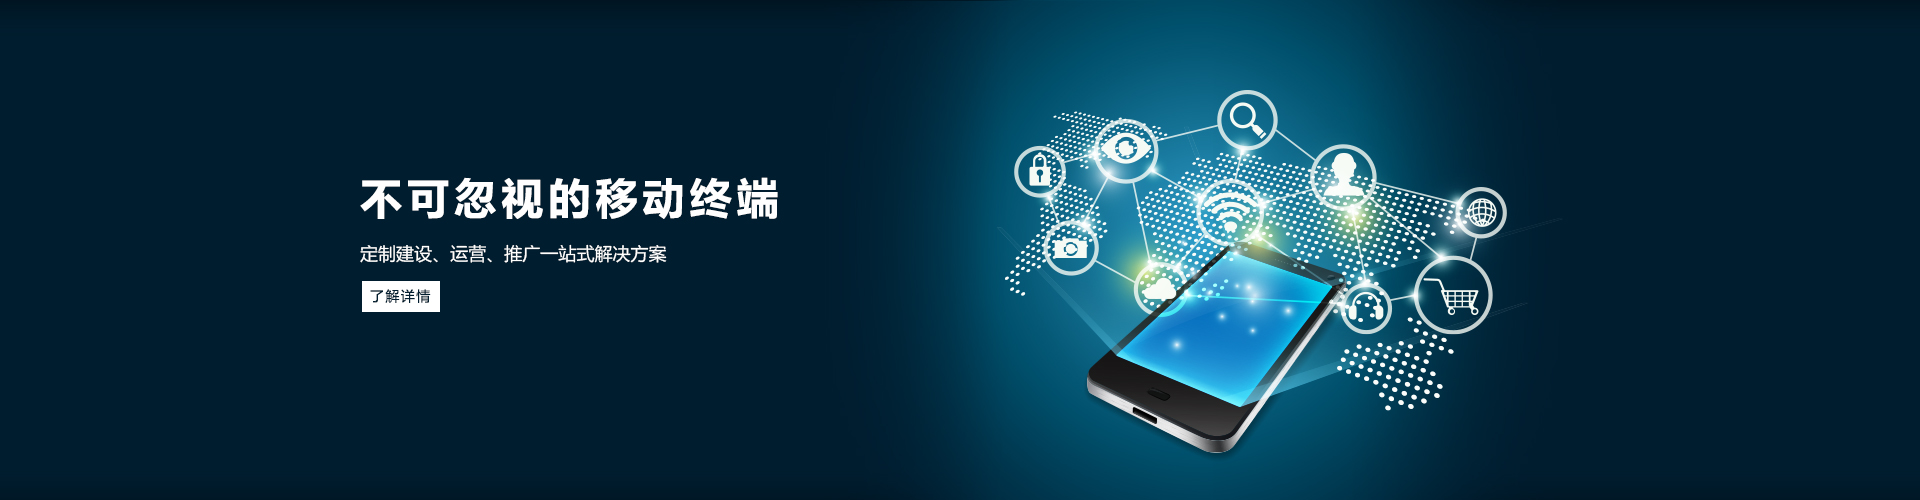 关于当前产品035娱乐app下载-035娱乐平台app官方版下载·(中国)官方网站的成功案例等相关图片